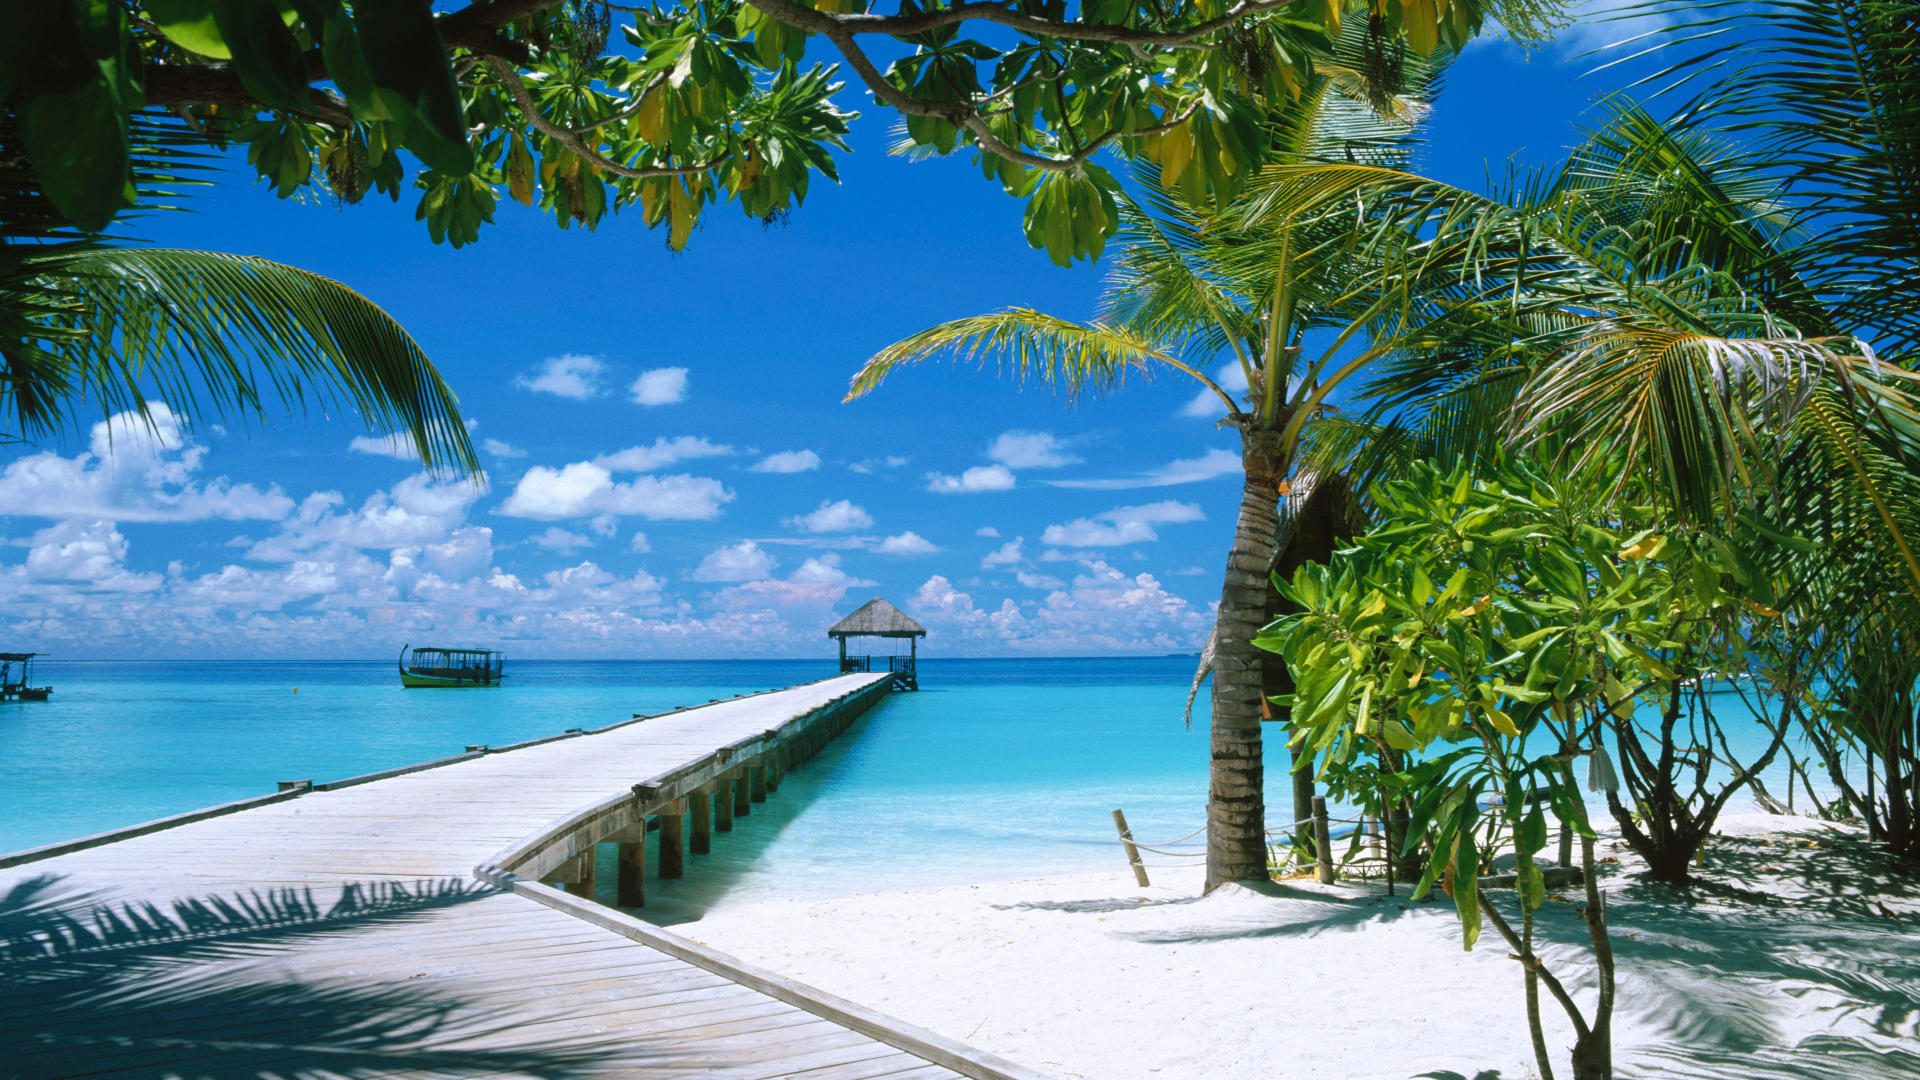 Xem hình nền bãi biển Maldives sẽ khiến bạn tin rằng mình đang chìm vào một thiên đường trên mặt đất. Với sand dunes dạng hình tấm khăn lớn, nước biển trong vắt cùng những rạn san hô đầy màu sắc, bãi biển Maldives là một trong những điểm đến tuyệt vời nhất trên thế giới, hãy khám phá với hình ảnh!